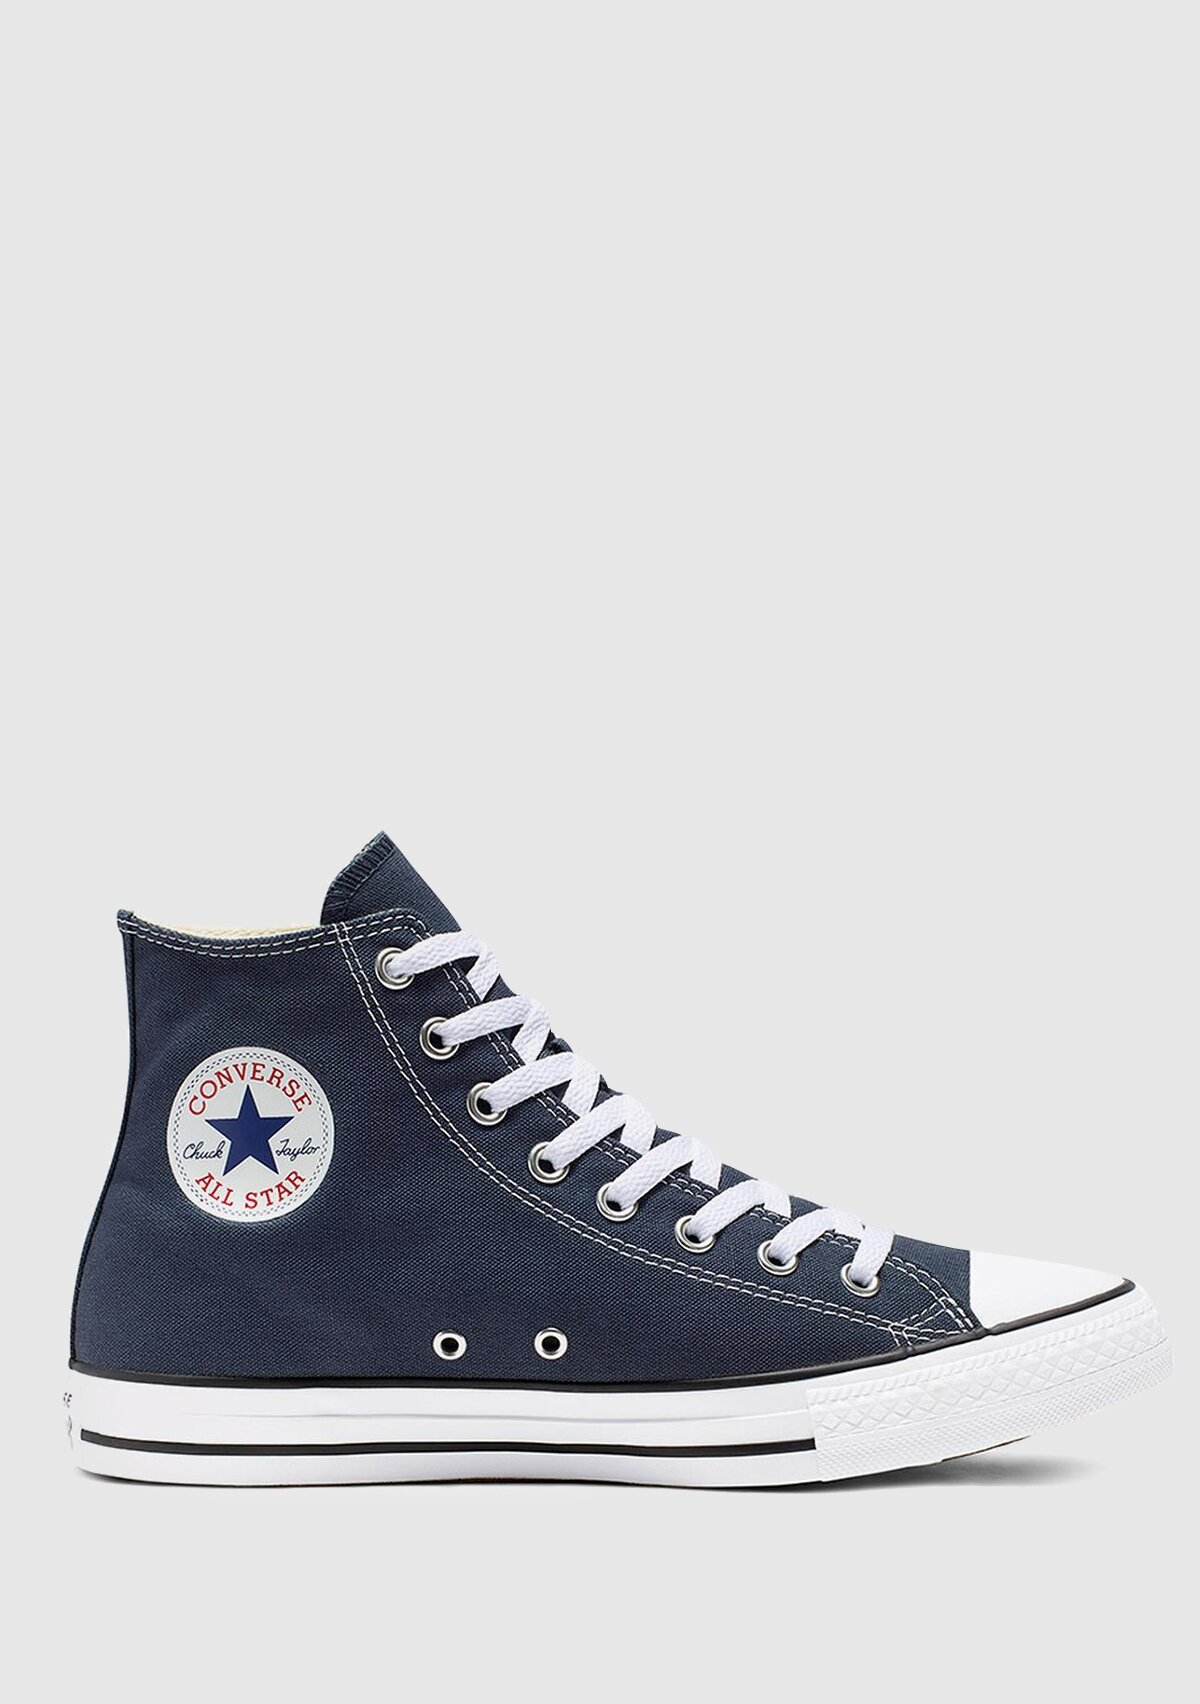 Converse Chuck Taylor All Star Lacivert Erkek Sneaker M9622C 